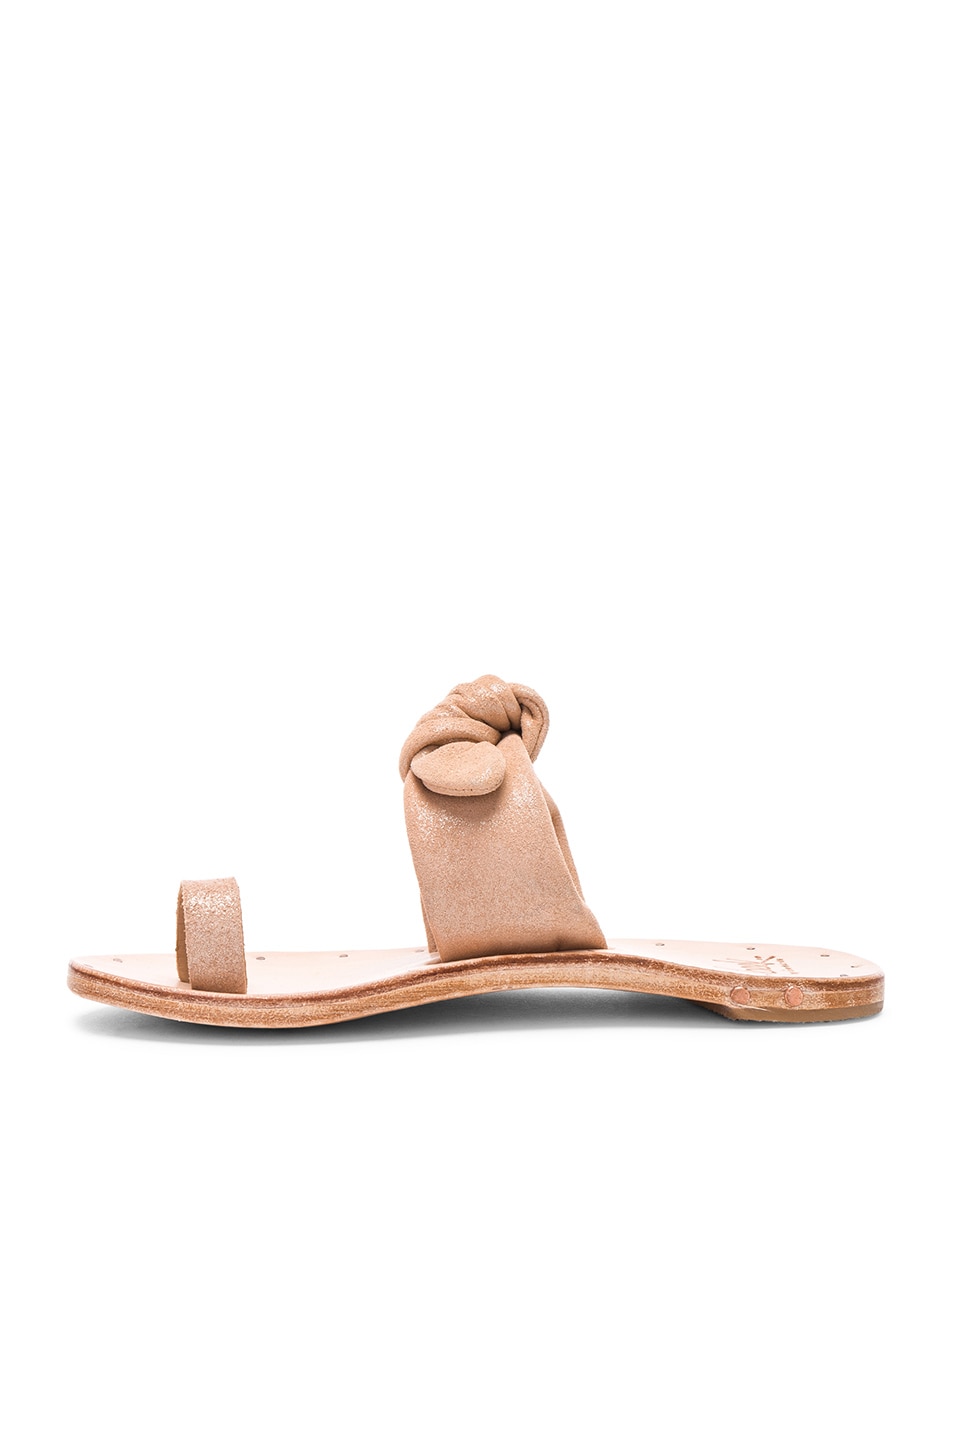 Beek Lory Sandal in Metallic Apricot & Tan | FWRD